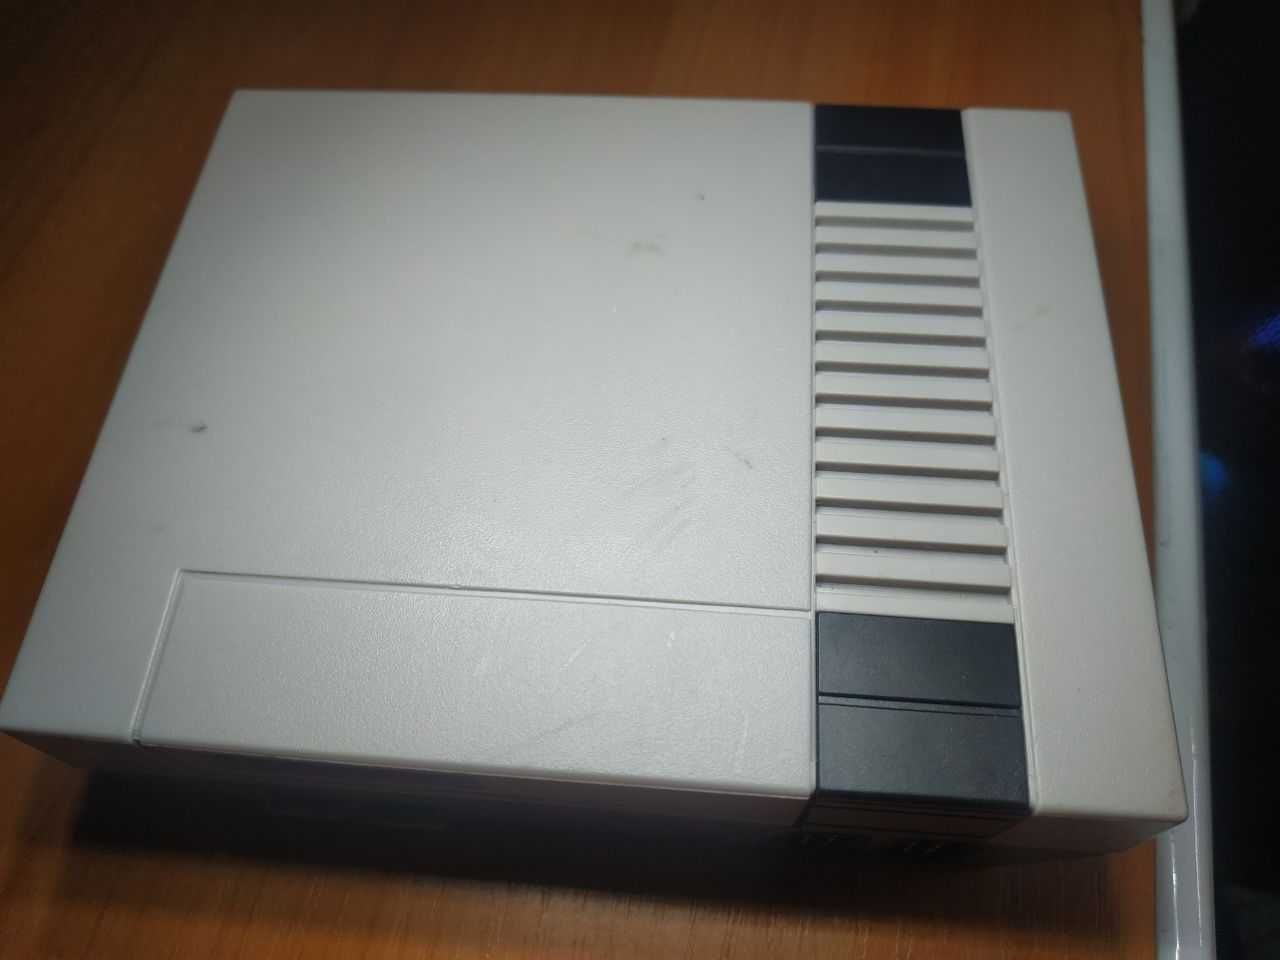 Игровая приставка Mini NES + 620 игр консоль